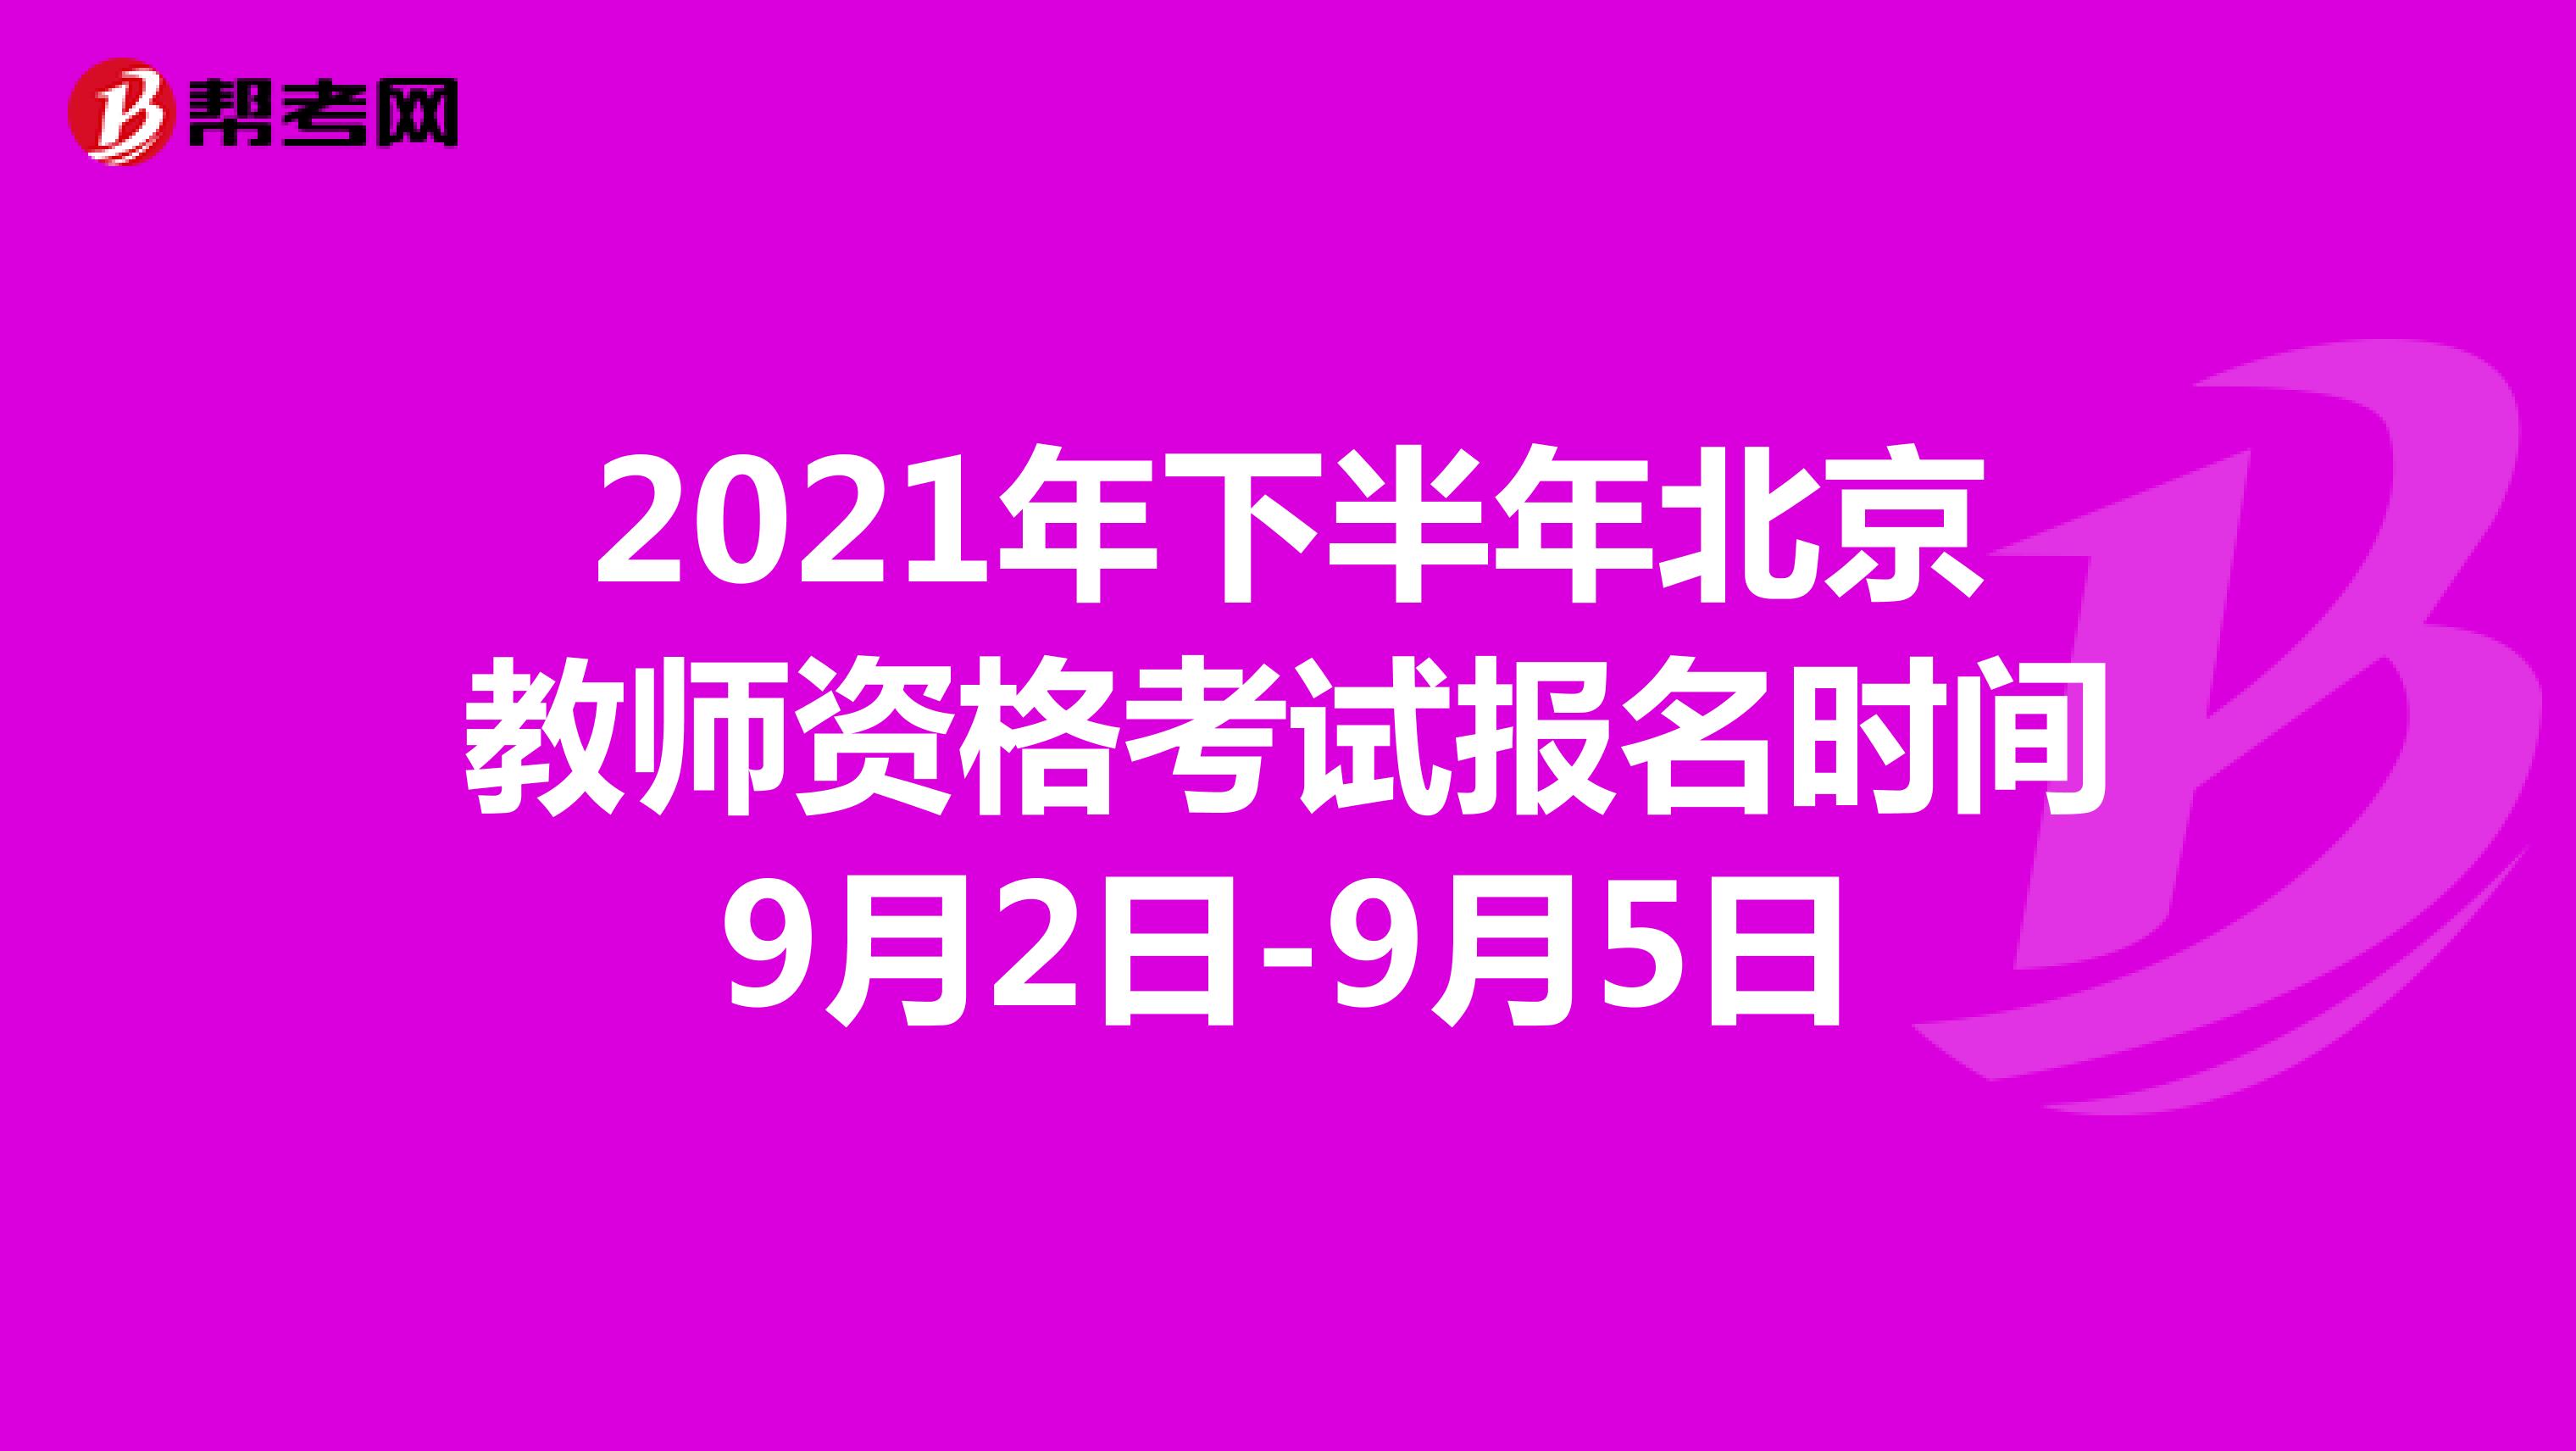 2021年下半年北京教师资格考试报名时间9月2日-9月5日